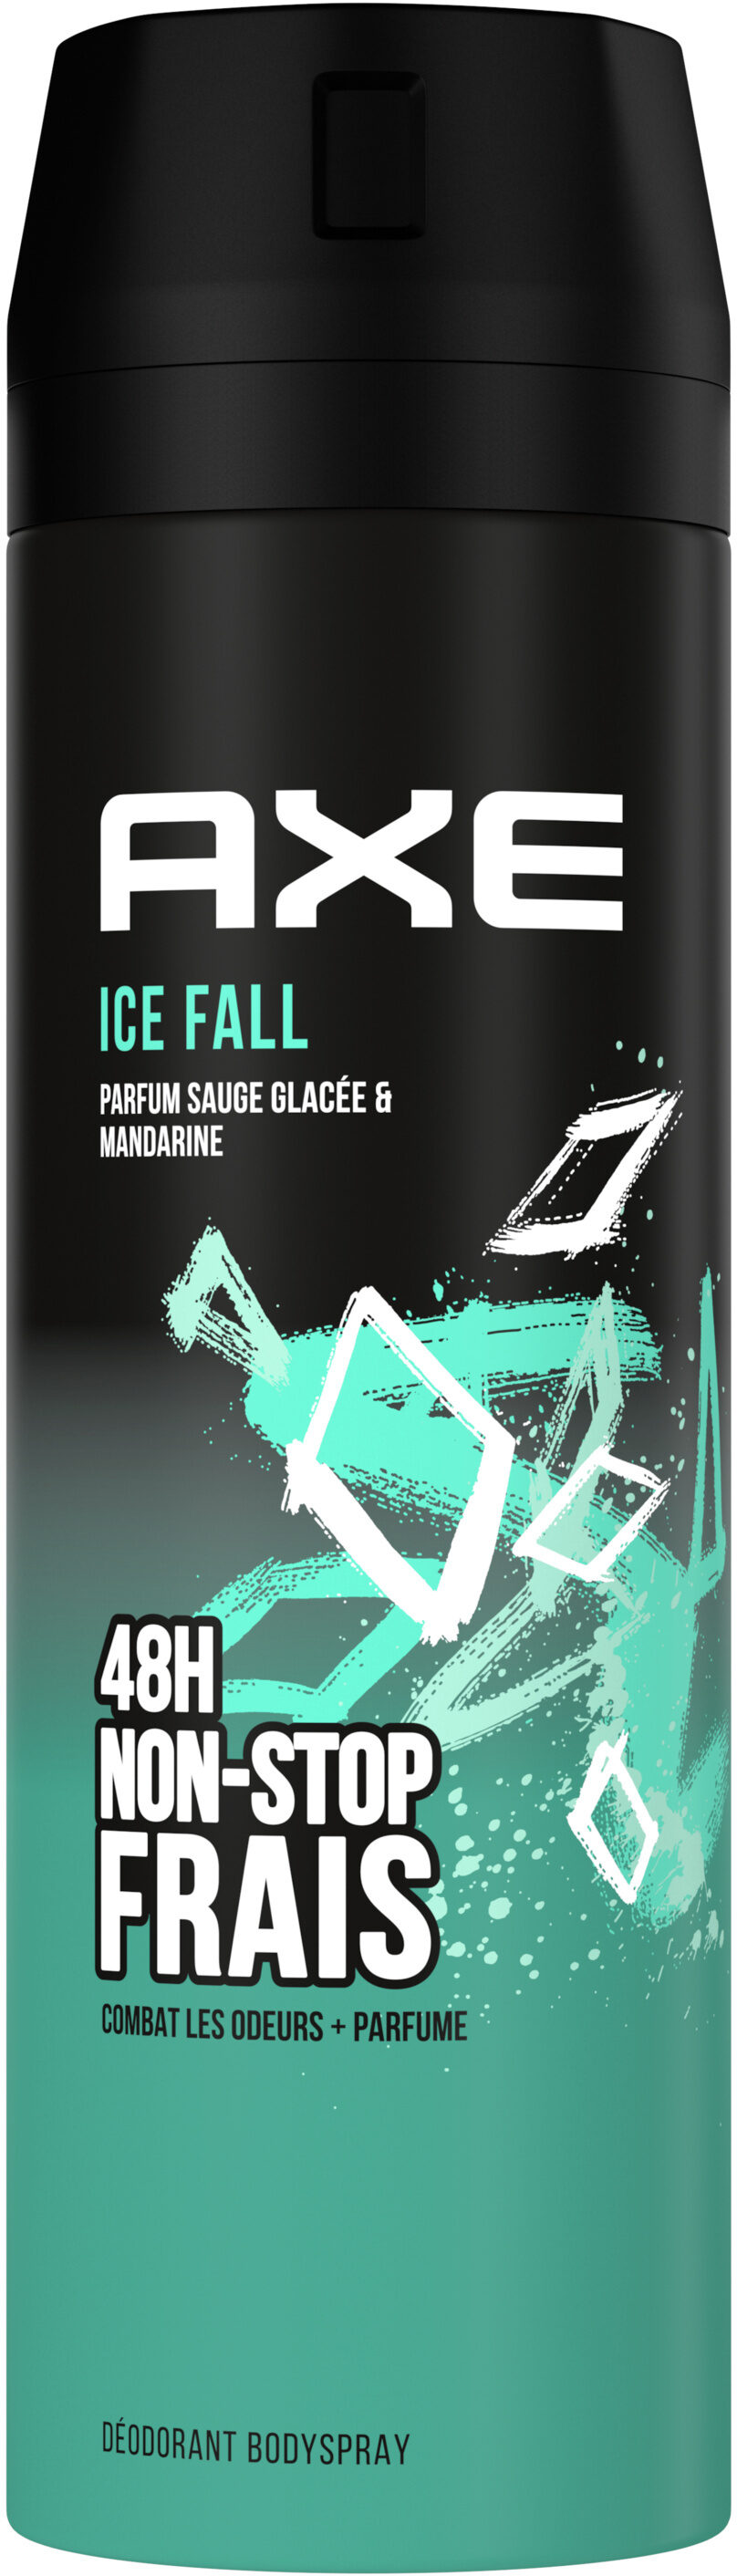 Axe Déodorant Homme Bodyspray Ice Fall 48h Non-Stop Frais 200ml - Product - fr